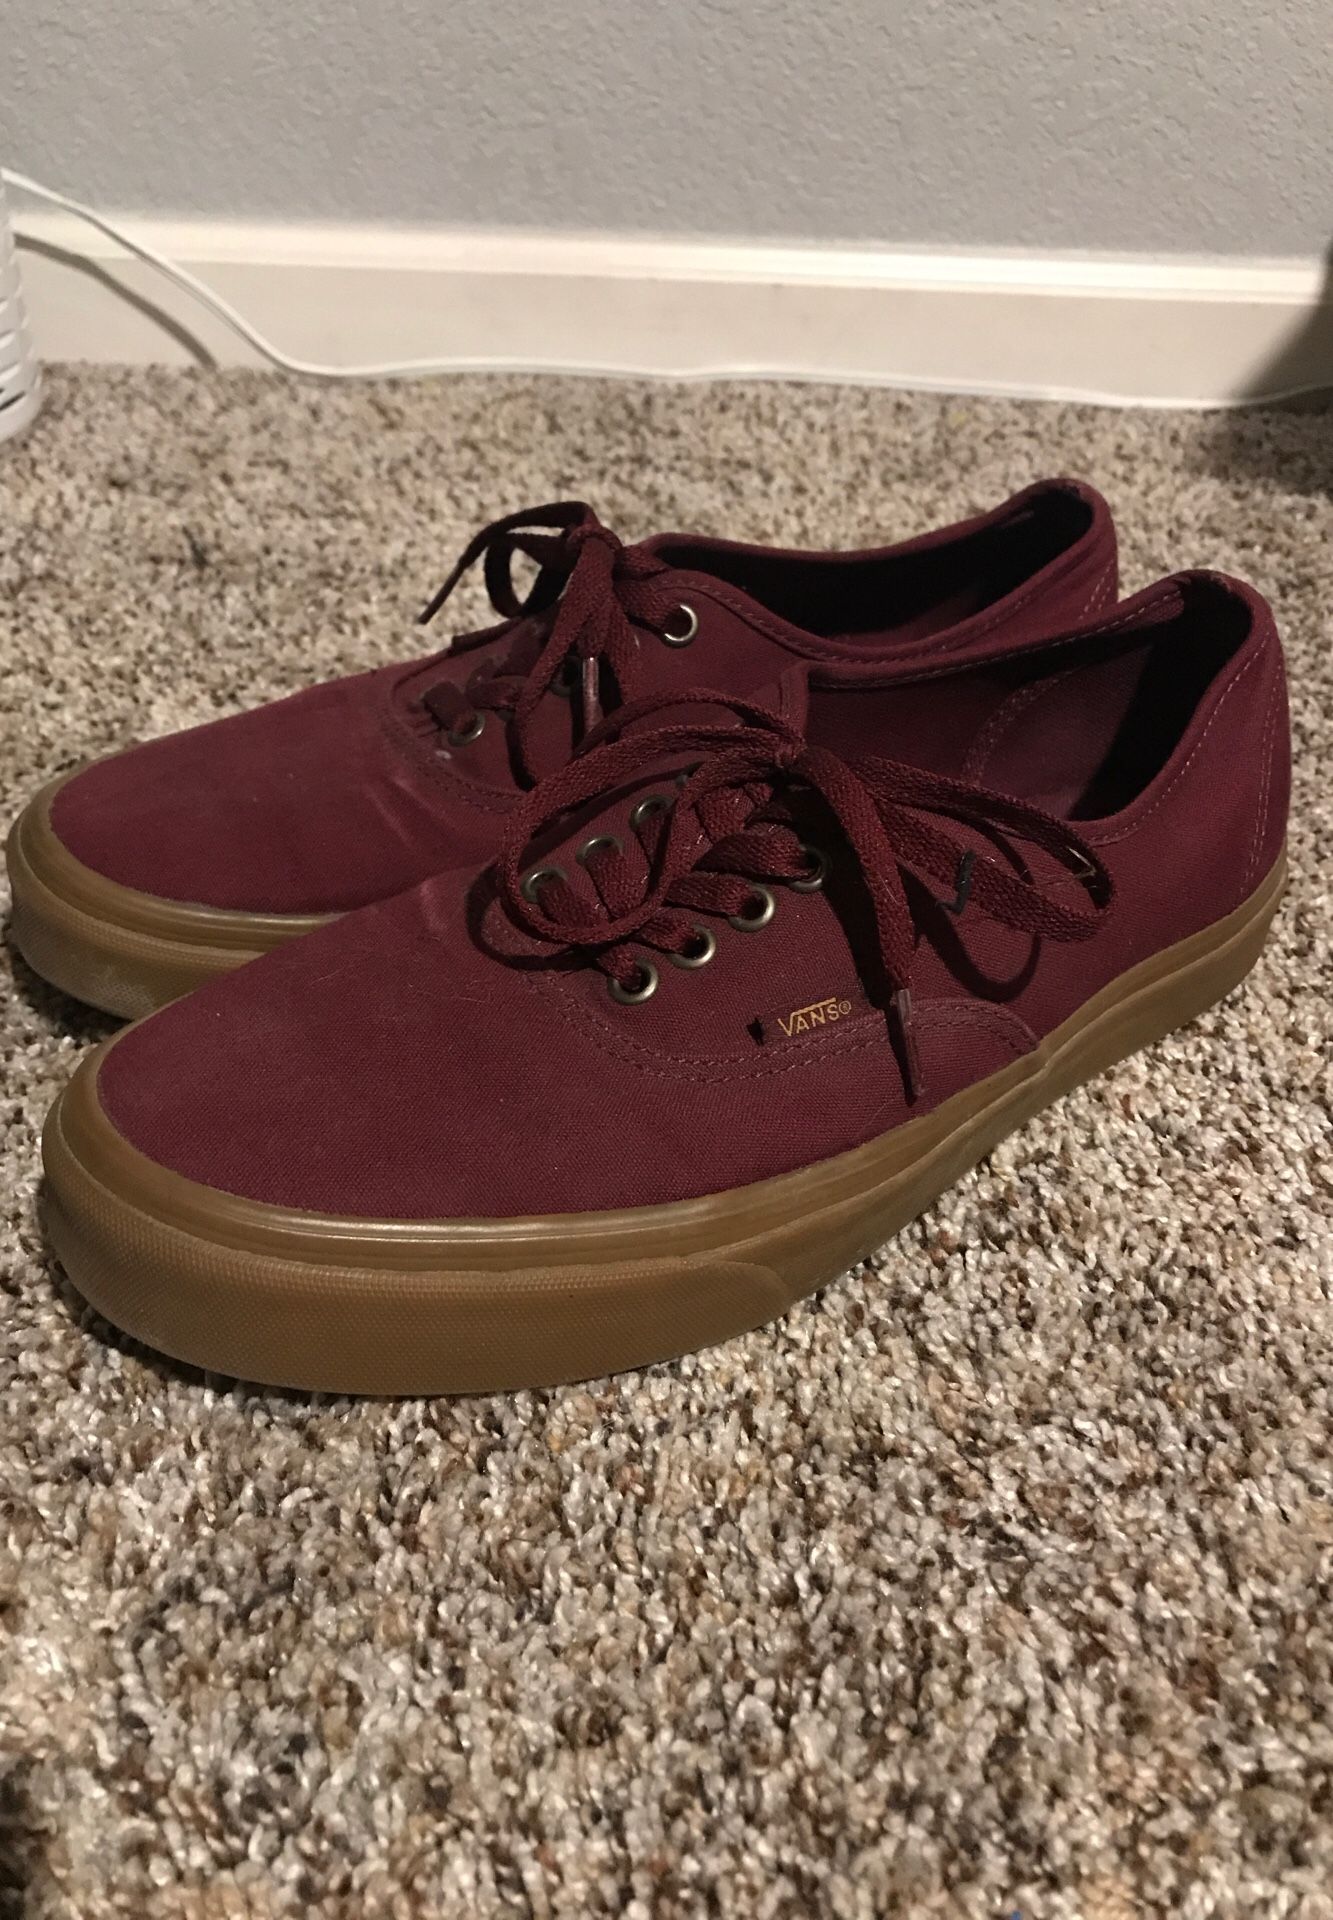 Vans 10.5 maroon shoes